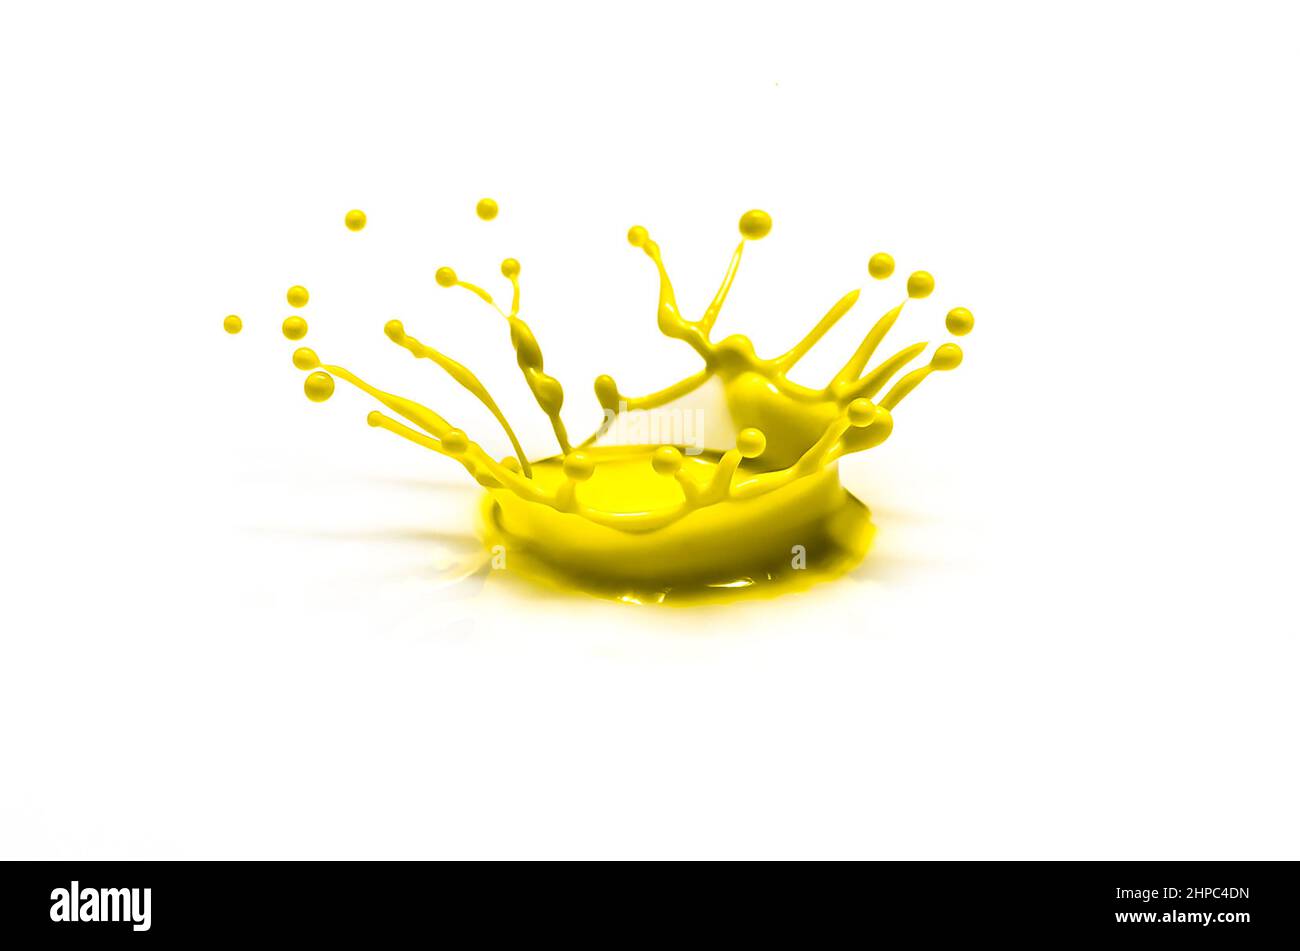 La gota de agua de color amarillo que golpea un plato blanco da forma a una corona. Foto como decoración de pared Foto de stock